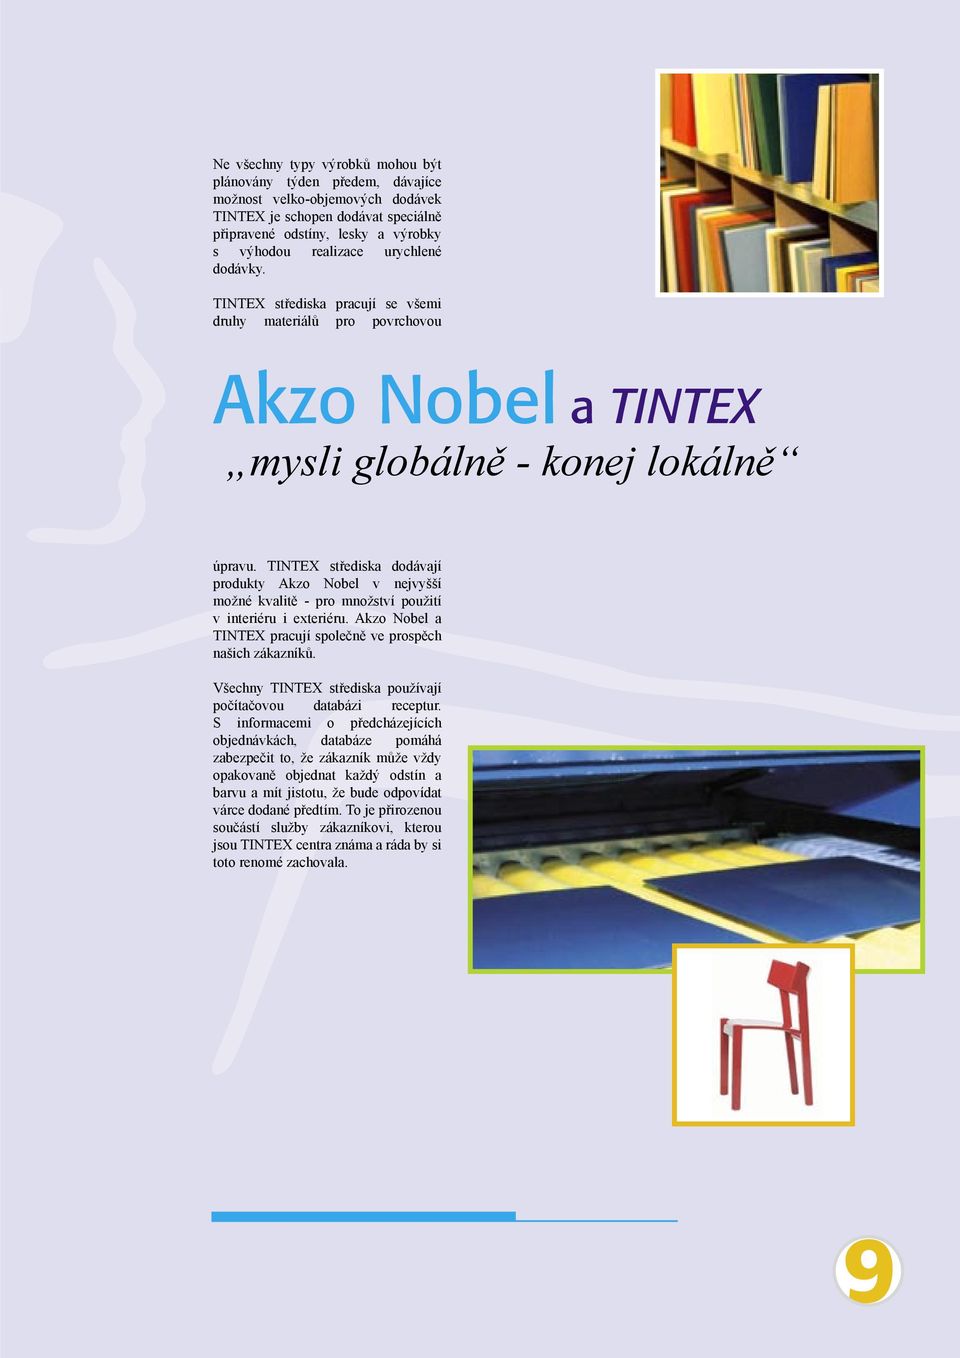 TINTEX střediska dodávají produkty Akzo Nobel v nejvyšší možné kvalitě - pro množství použití v interiéru i exteriéru. Akzo Nobel a TINTEX pracují společně ve prospěch našich zákazníků.